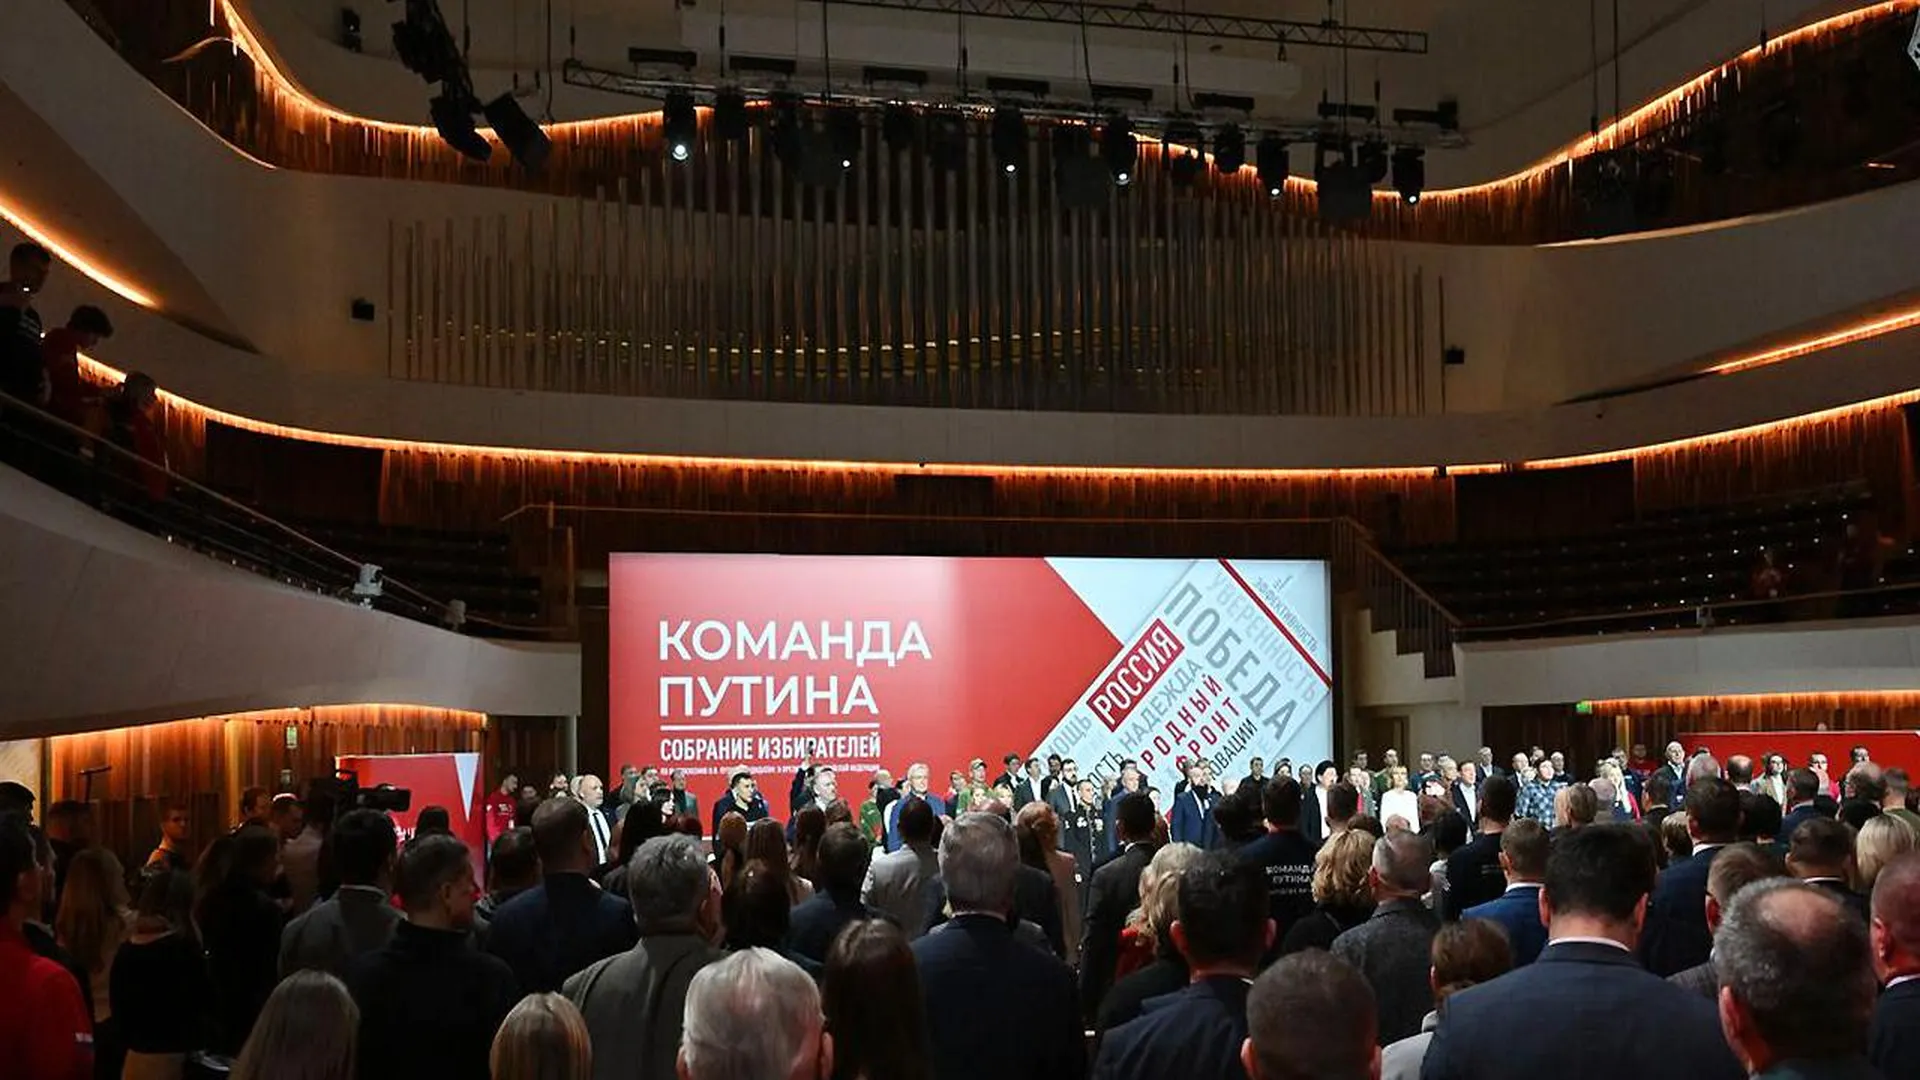 Анна Пахомова: под руководством Владимира Путина страна продолжит активное развитие экономики